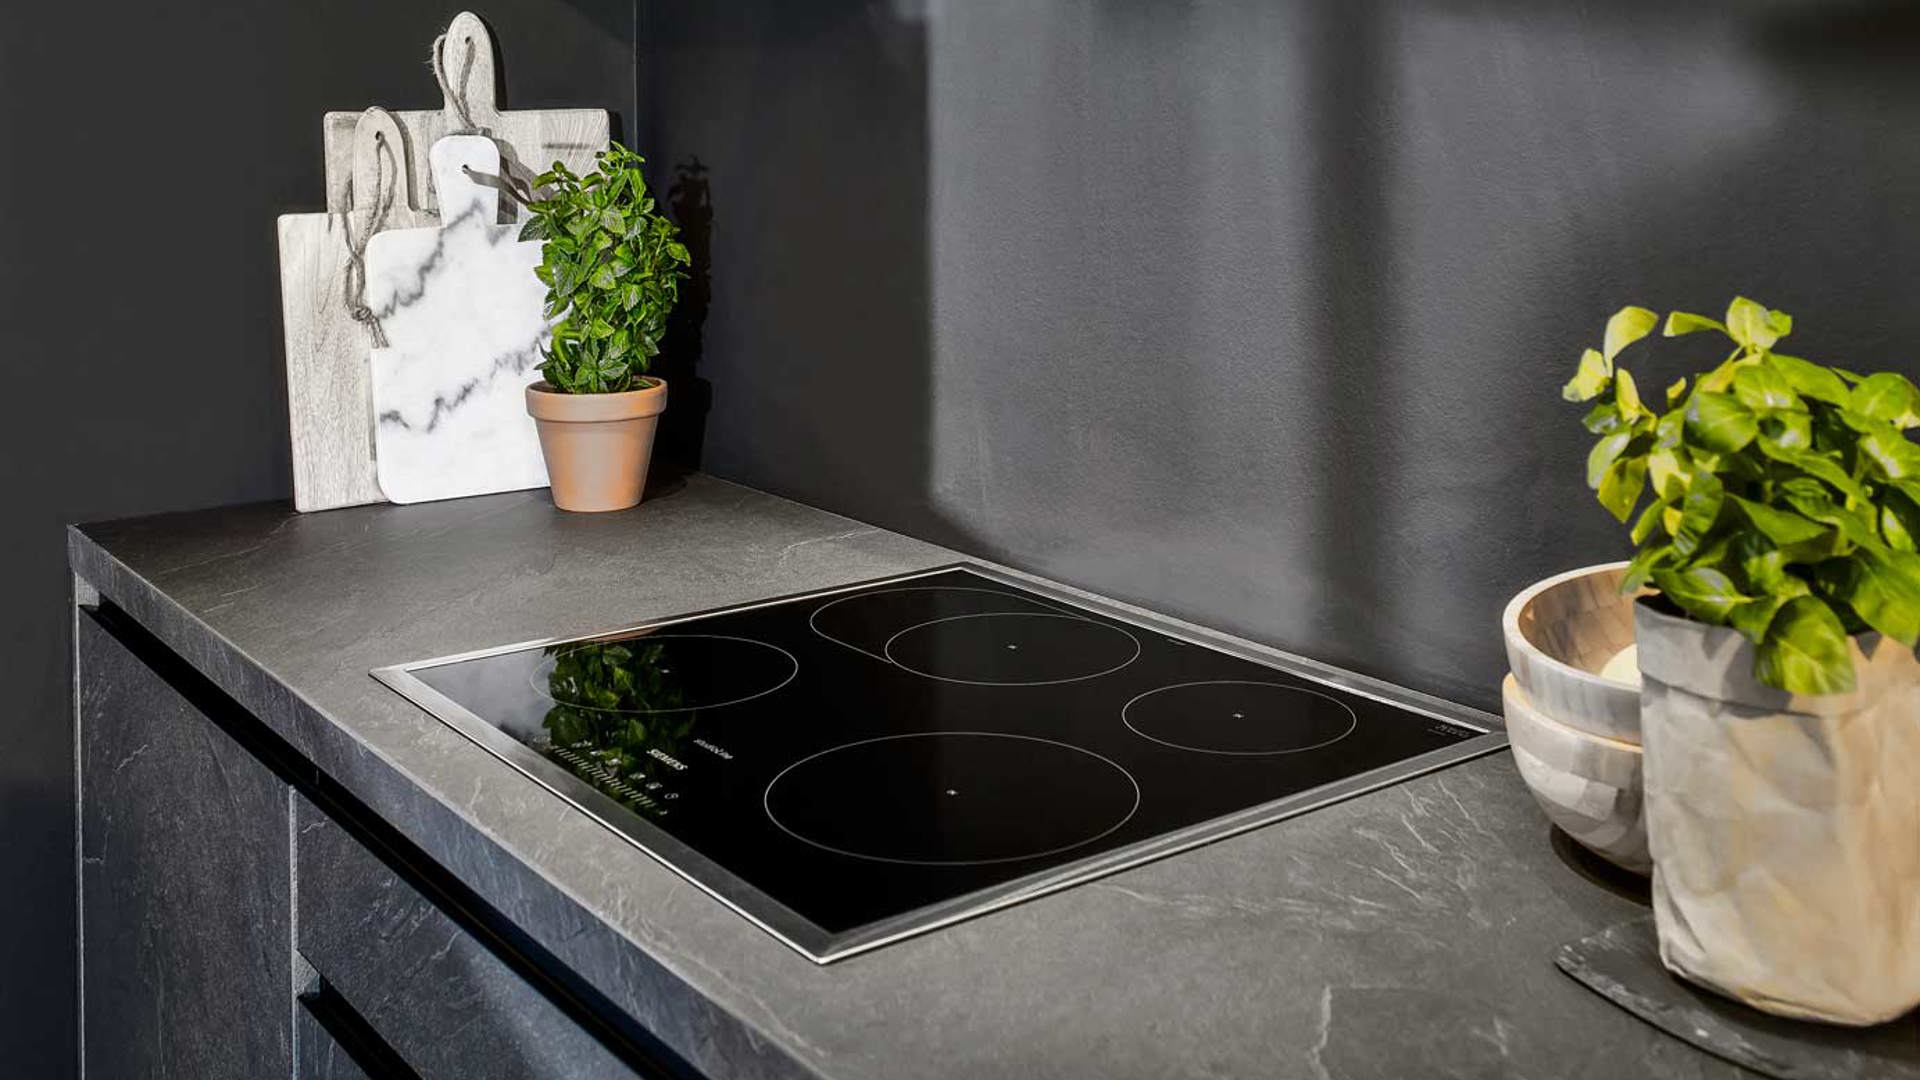 Leisteen grijze keuken met apparatuur van Siemens